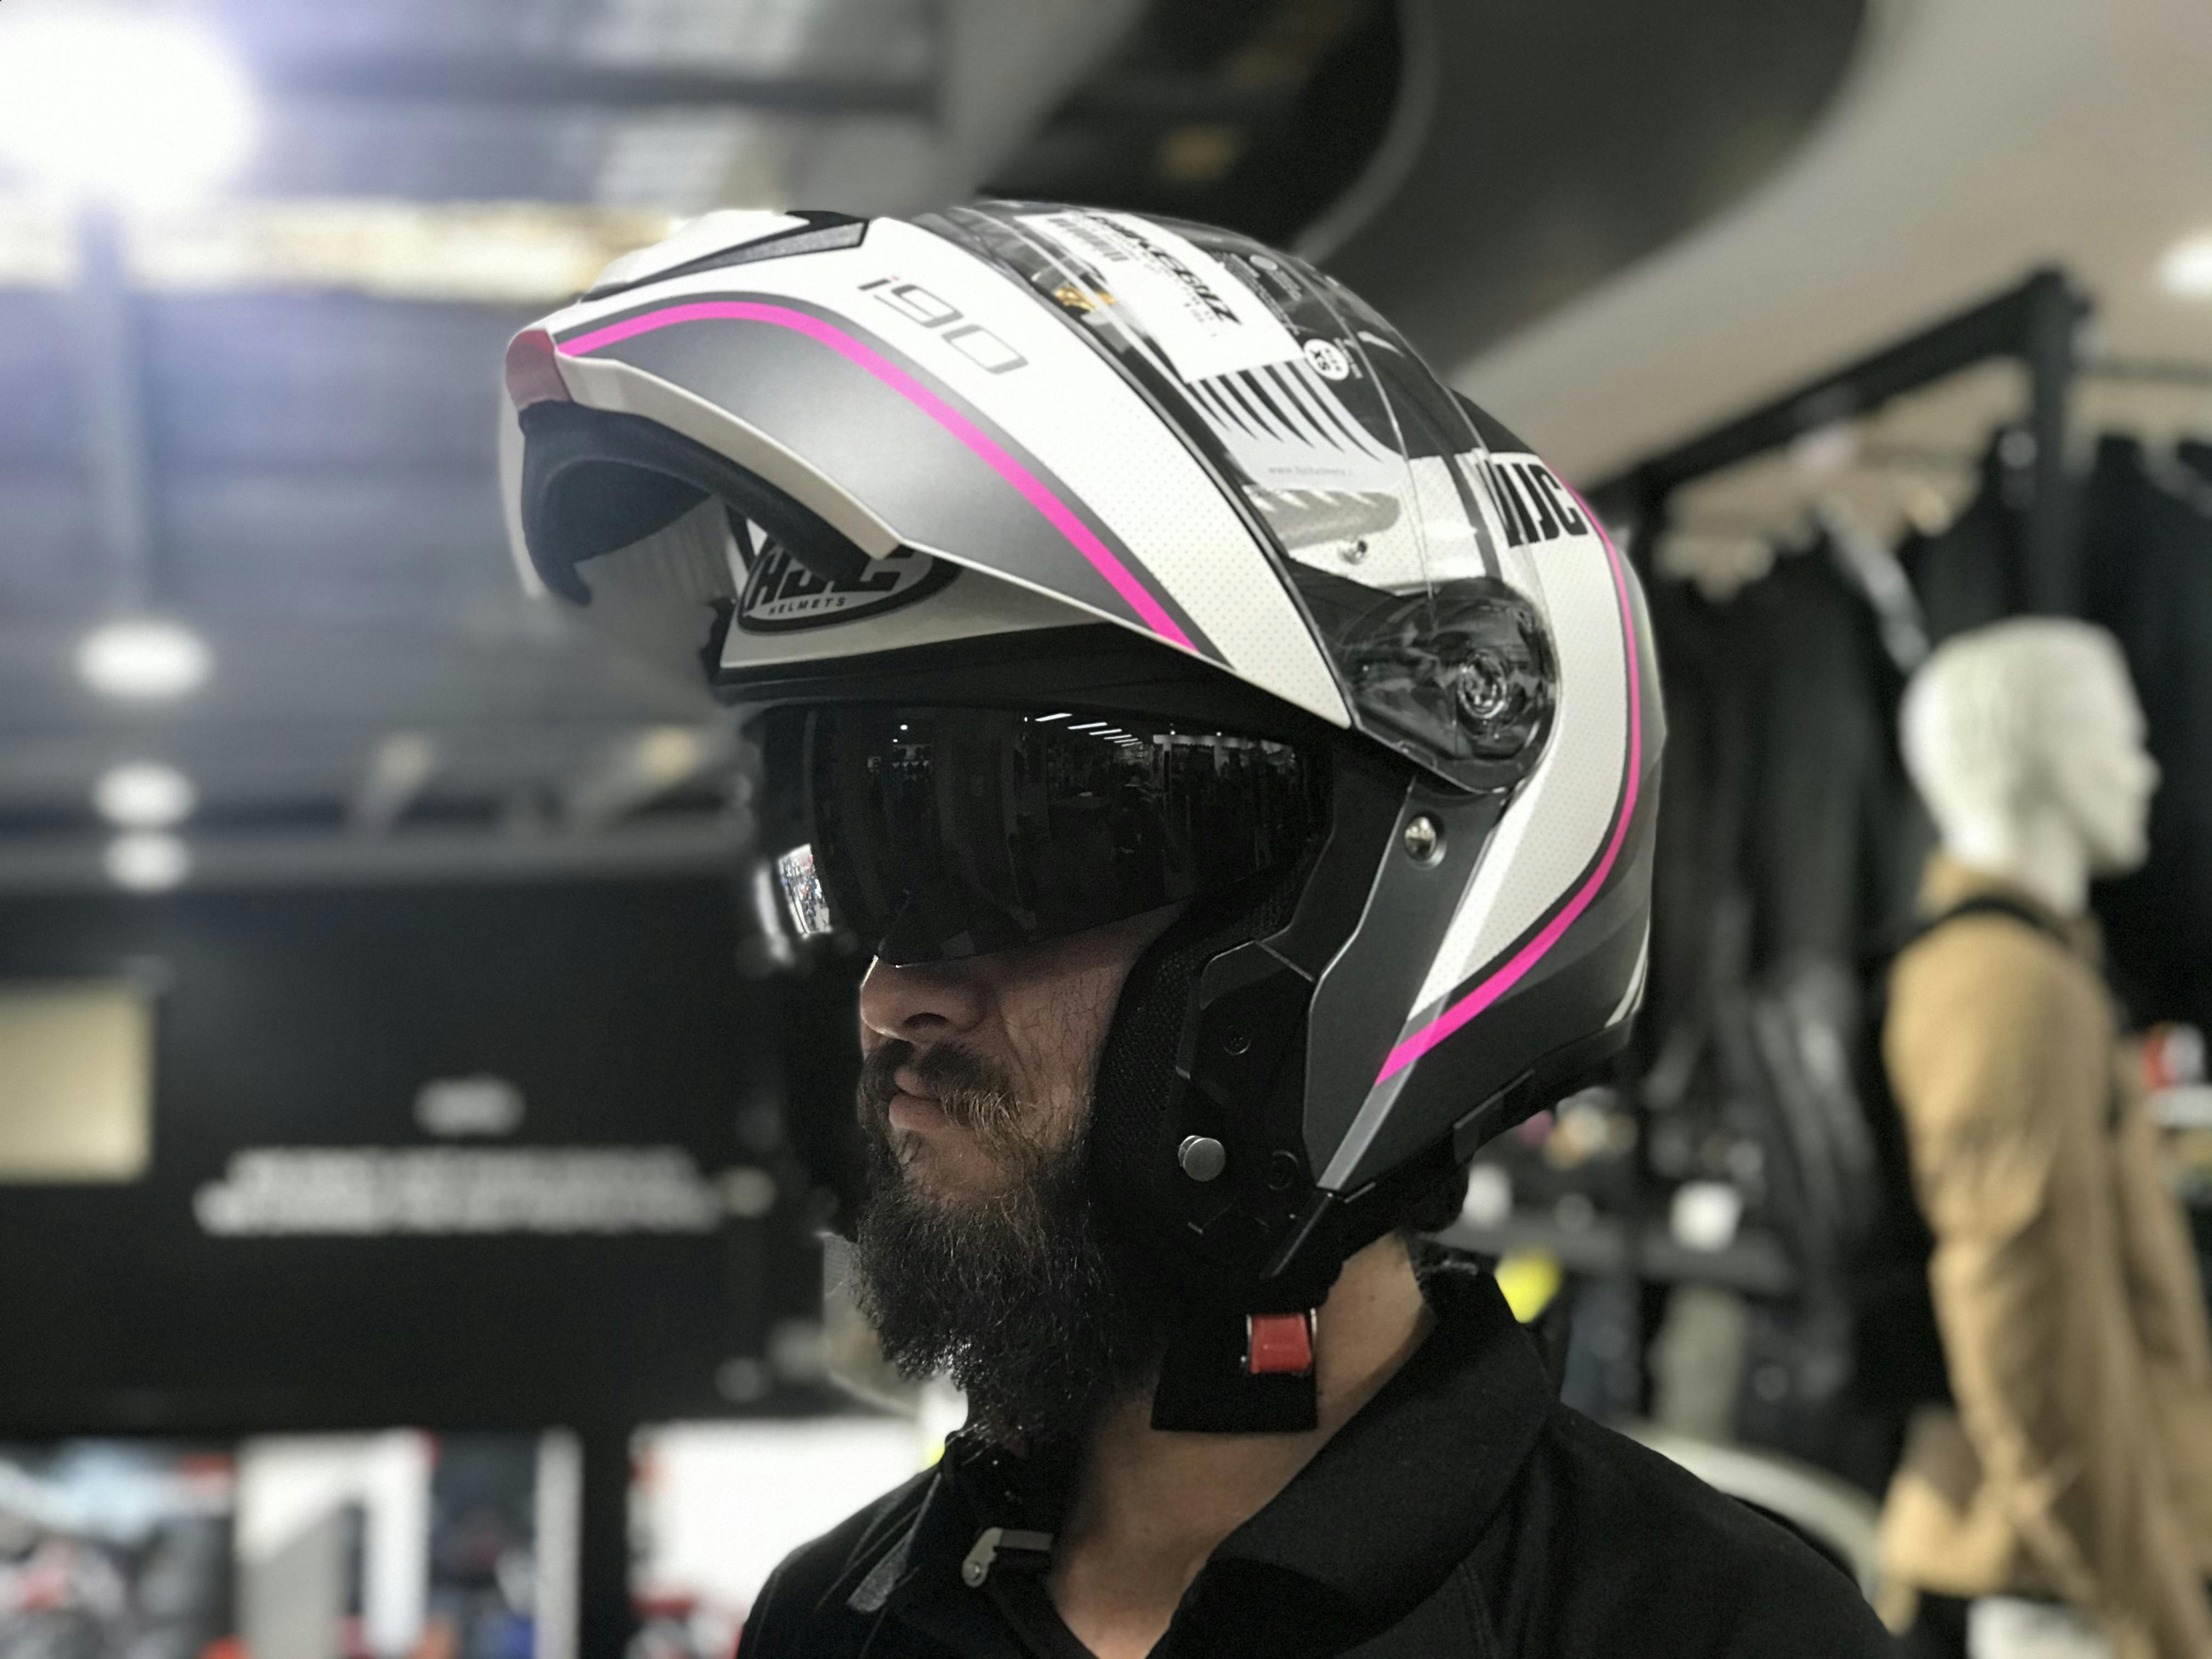 Andrew in a modular helmet